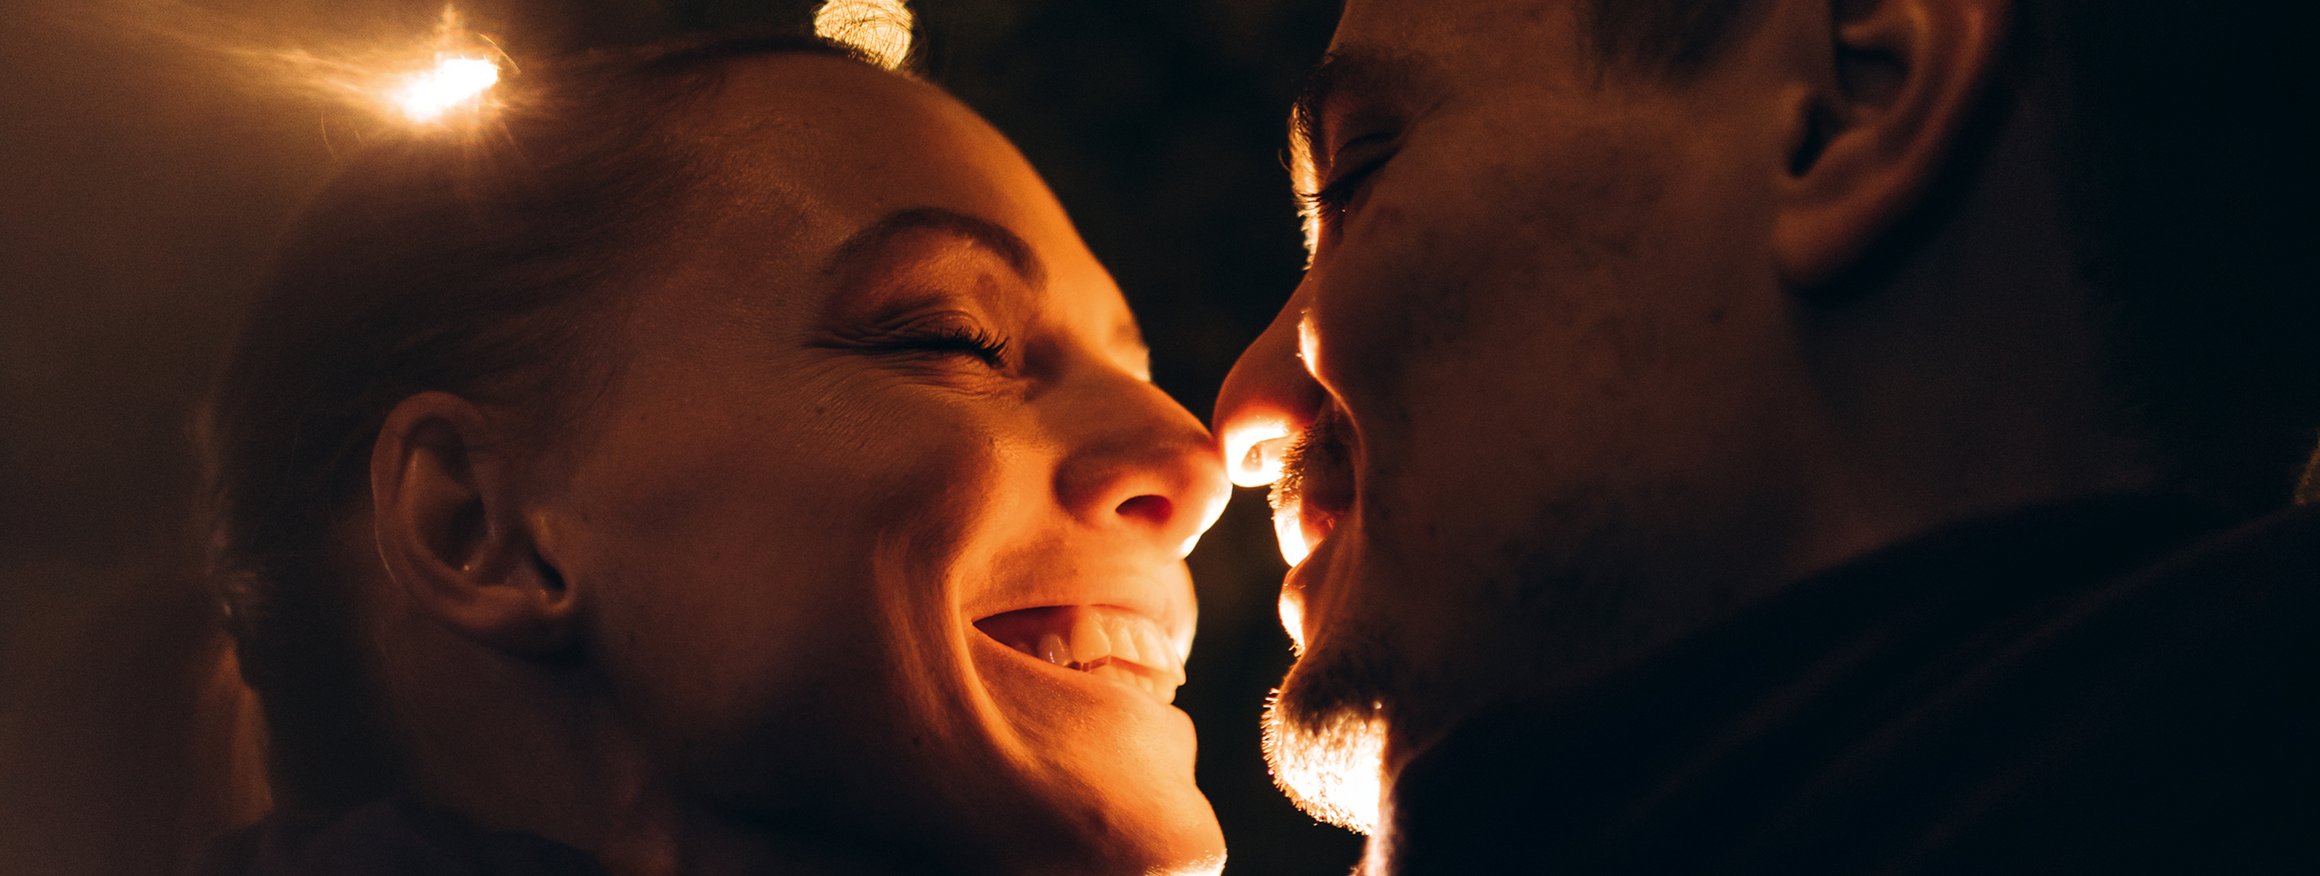 Ein Paar steht verliebt lächelnd beieinander mit geschlossenen Augen und die Nasenspitzen berühren sich